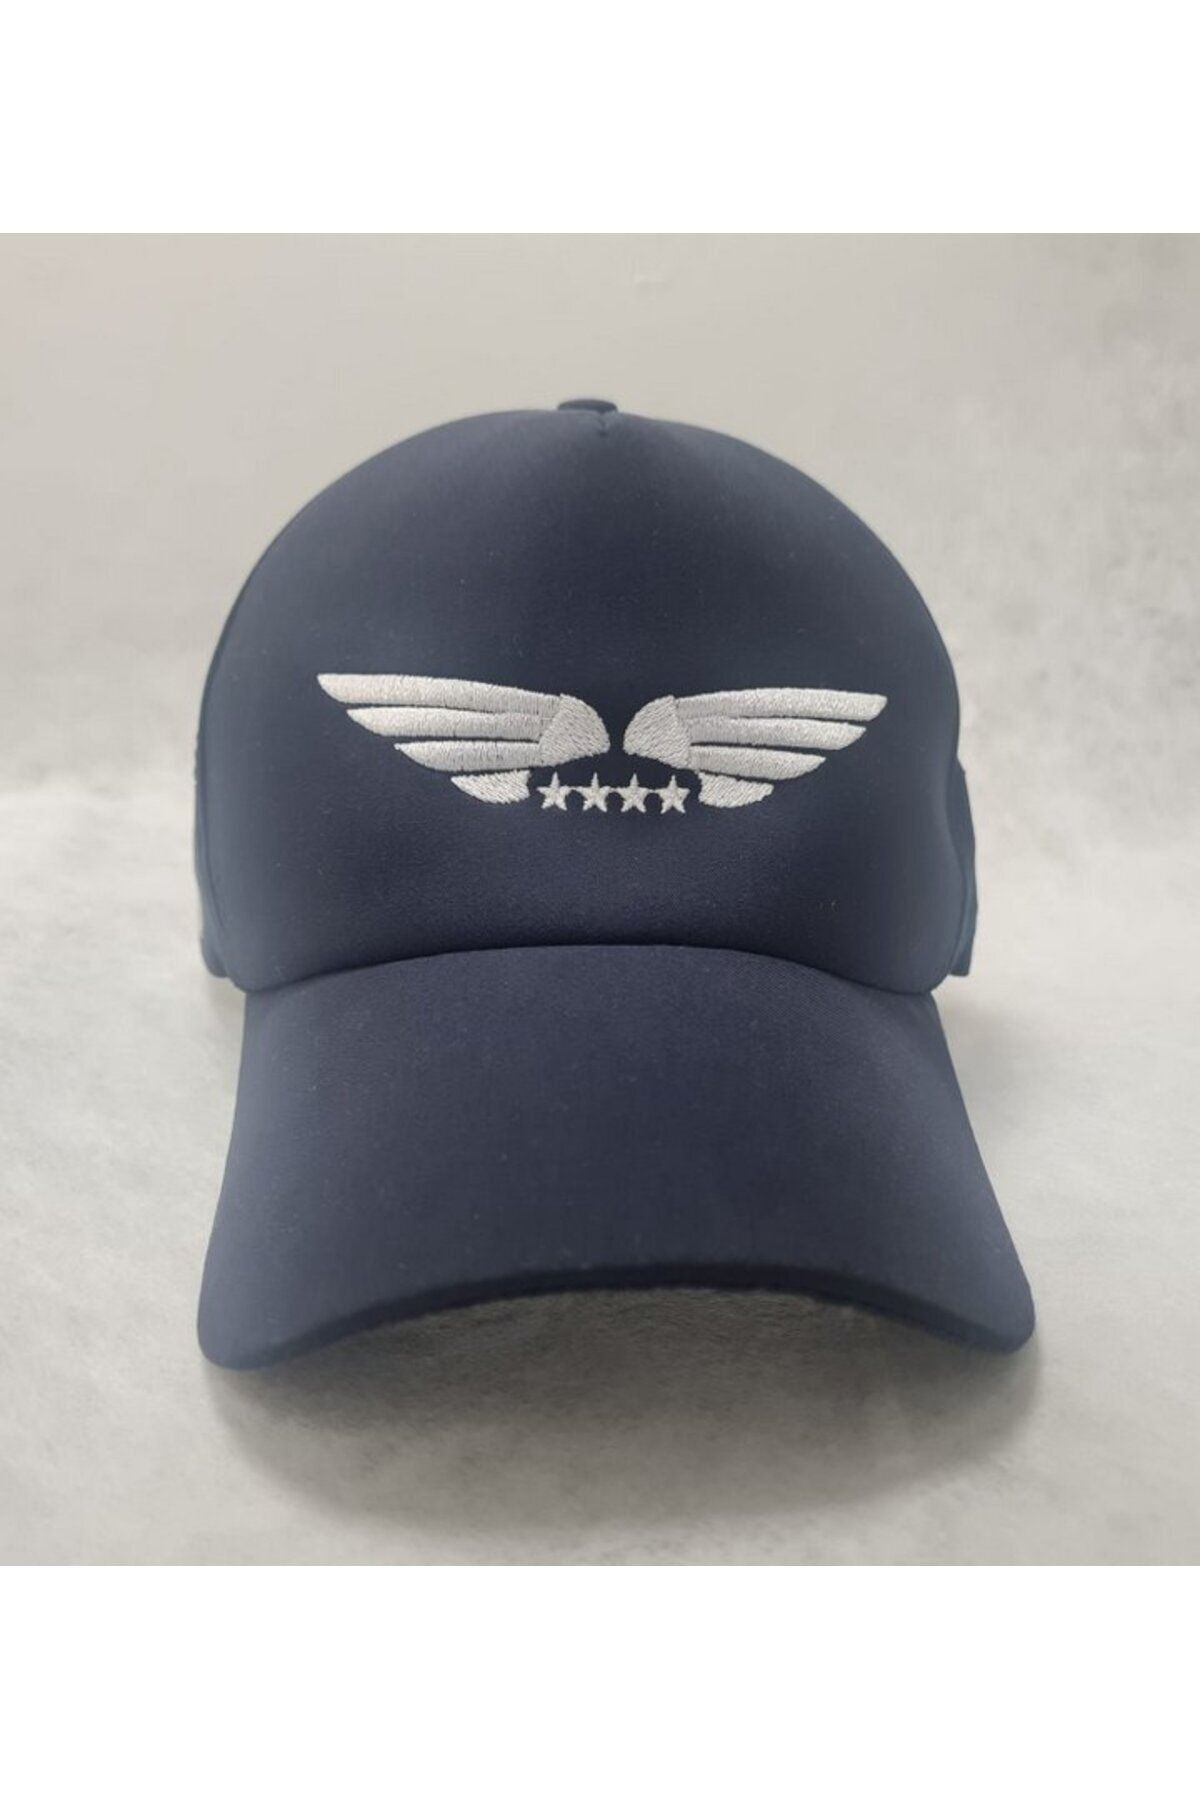 Arma Havacılık Şapkası Pilot Şapka Uçuş İha Drone Şapkası